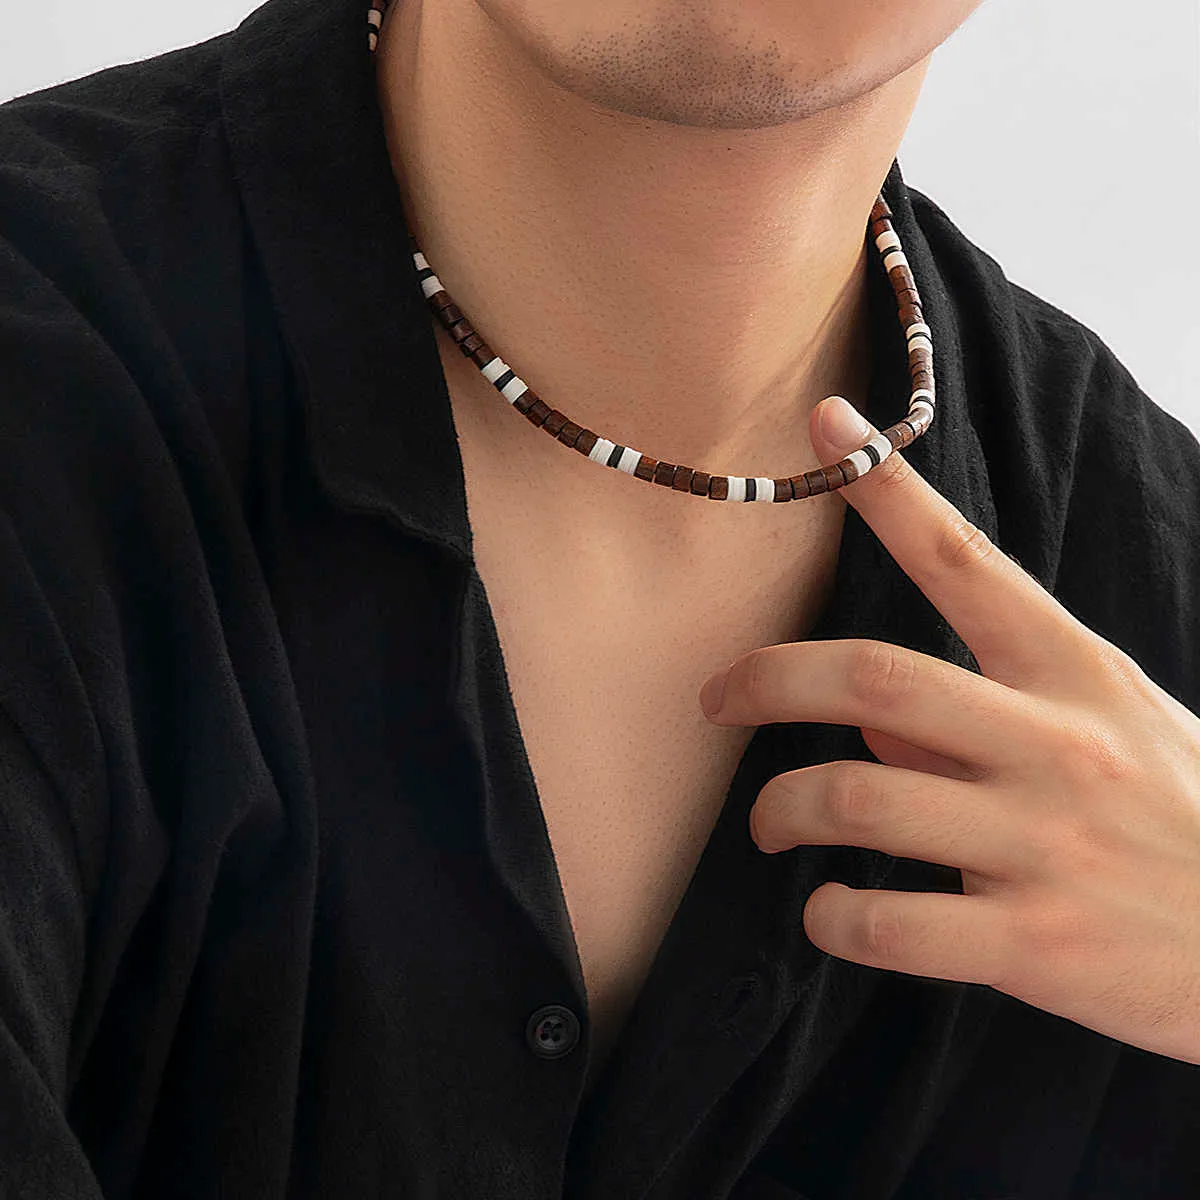 Long beaded pendant necklace for men - Inspire Uplift